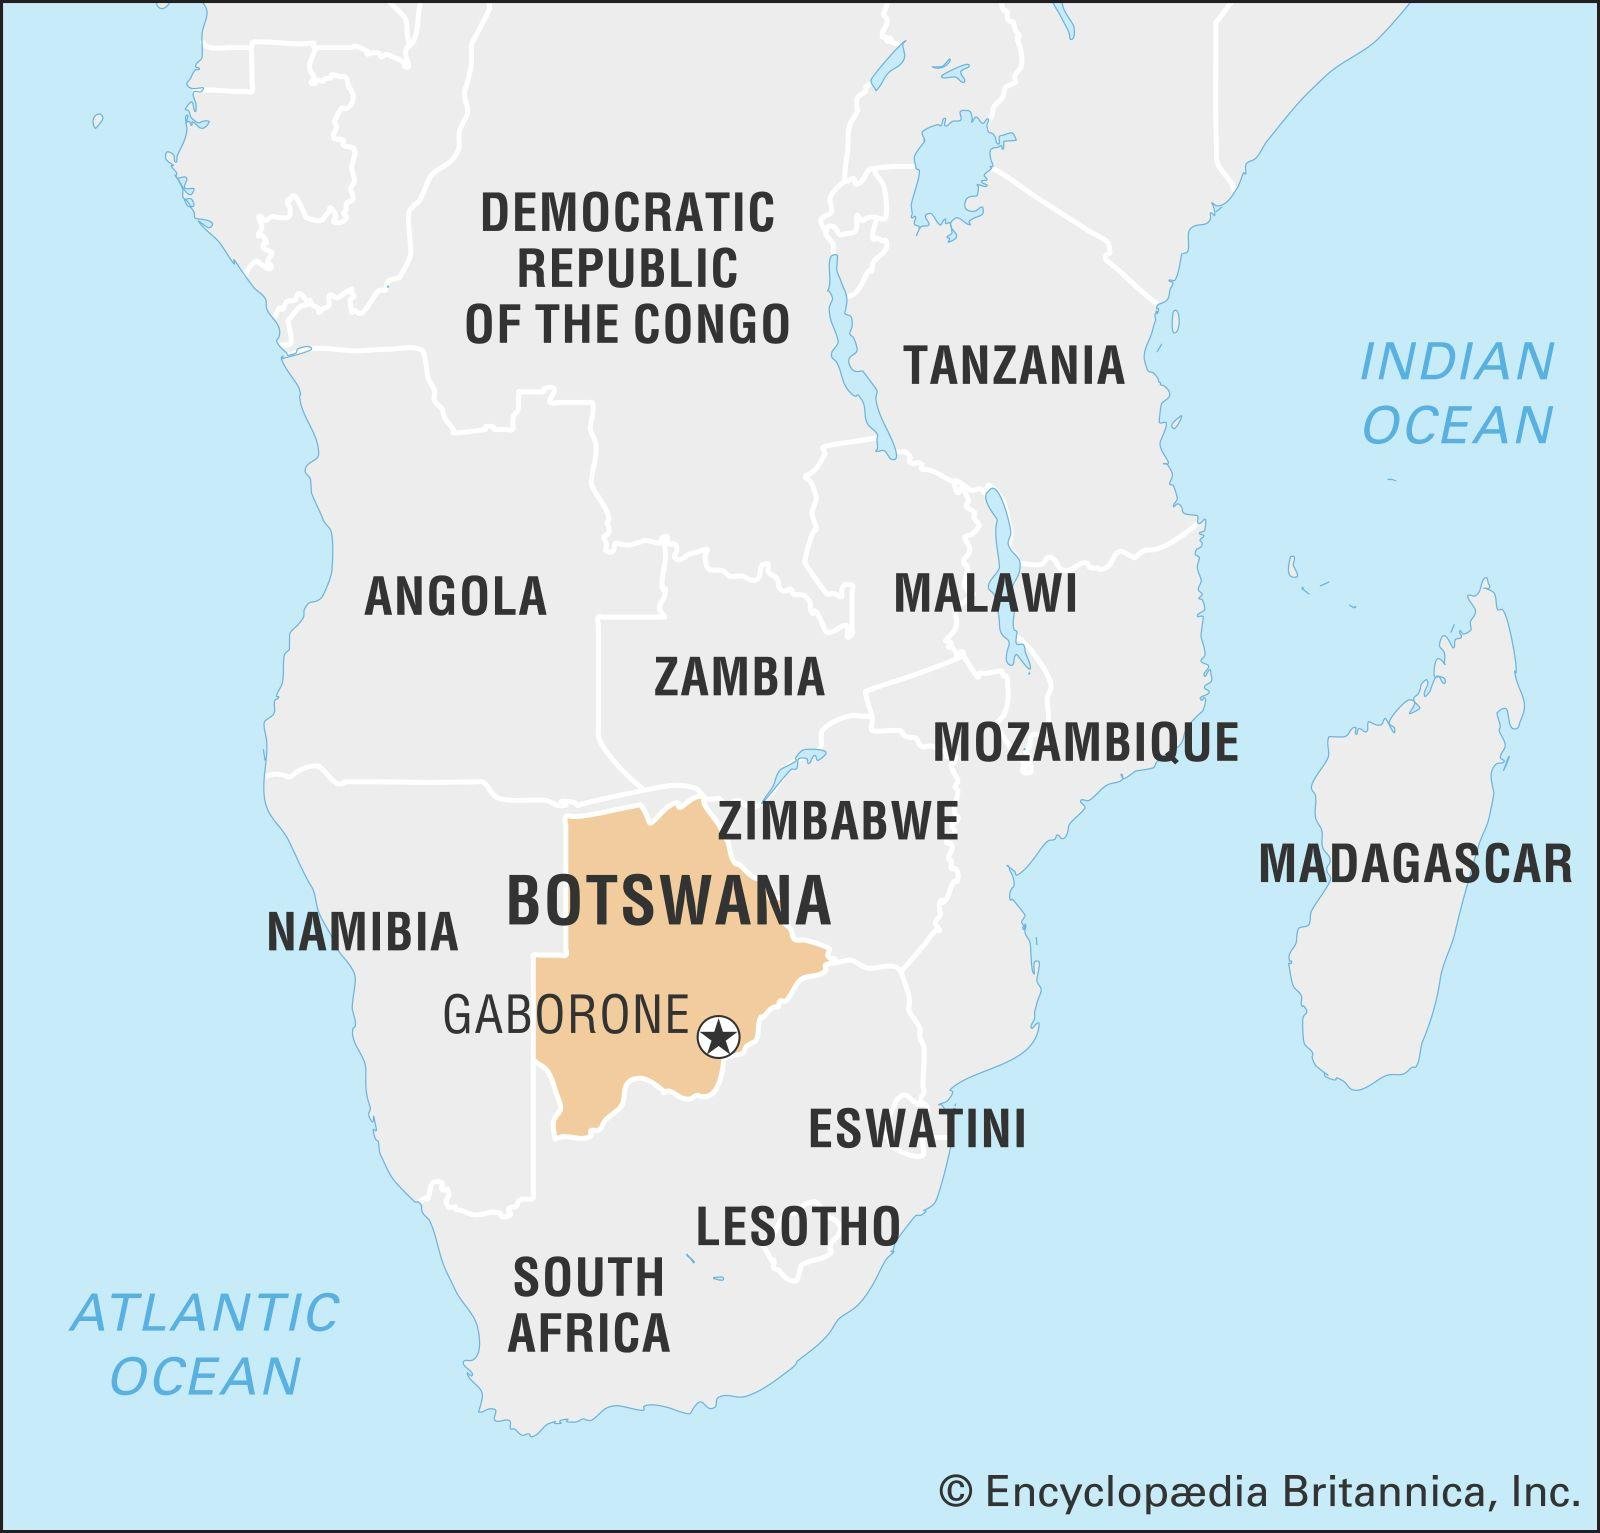 Top Attractions in Botswana